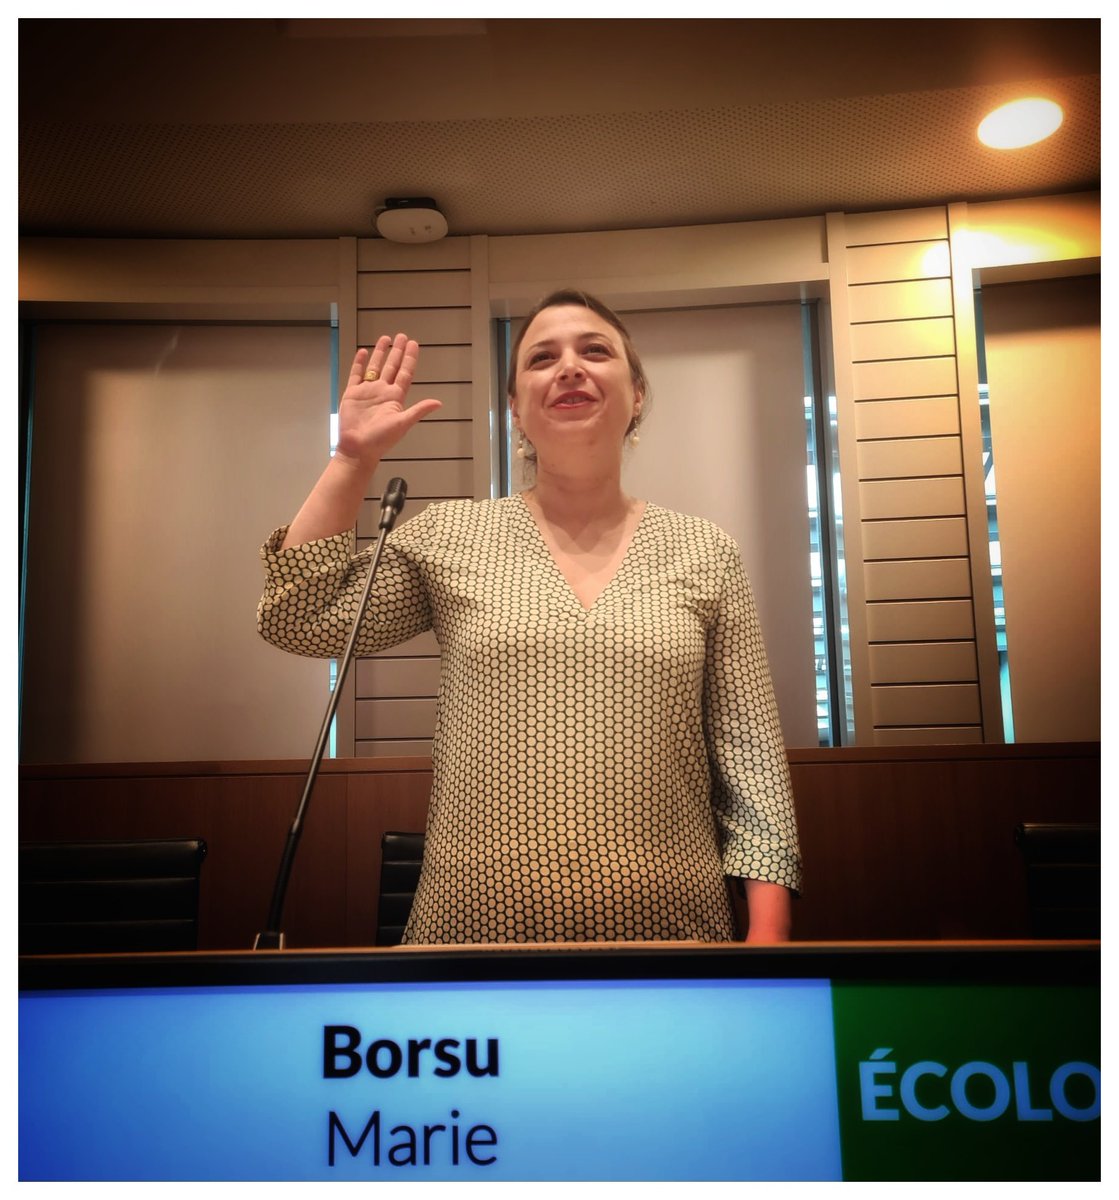 Marie Borsu, une prof au Parlement de la Fédération Wallonie-Bruxelles. Bienvenue à elle au 'PFWB' pour le groupe ECOLO, dans les commissions de l'éducation et du budget. #ecolo #plusvertplusjuste #enseignement #energiepositive